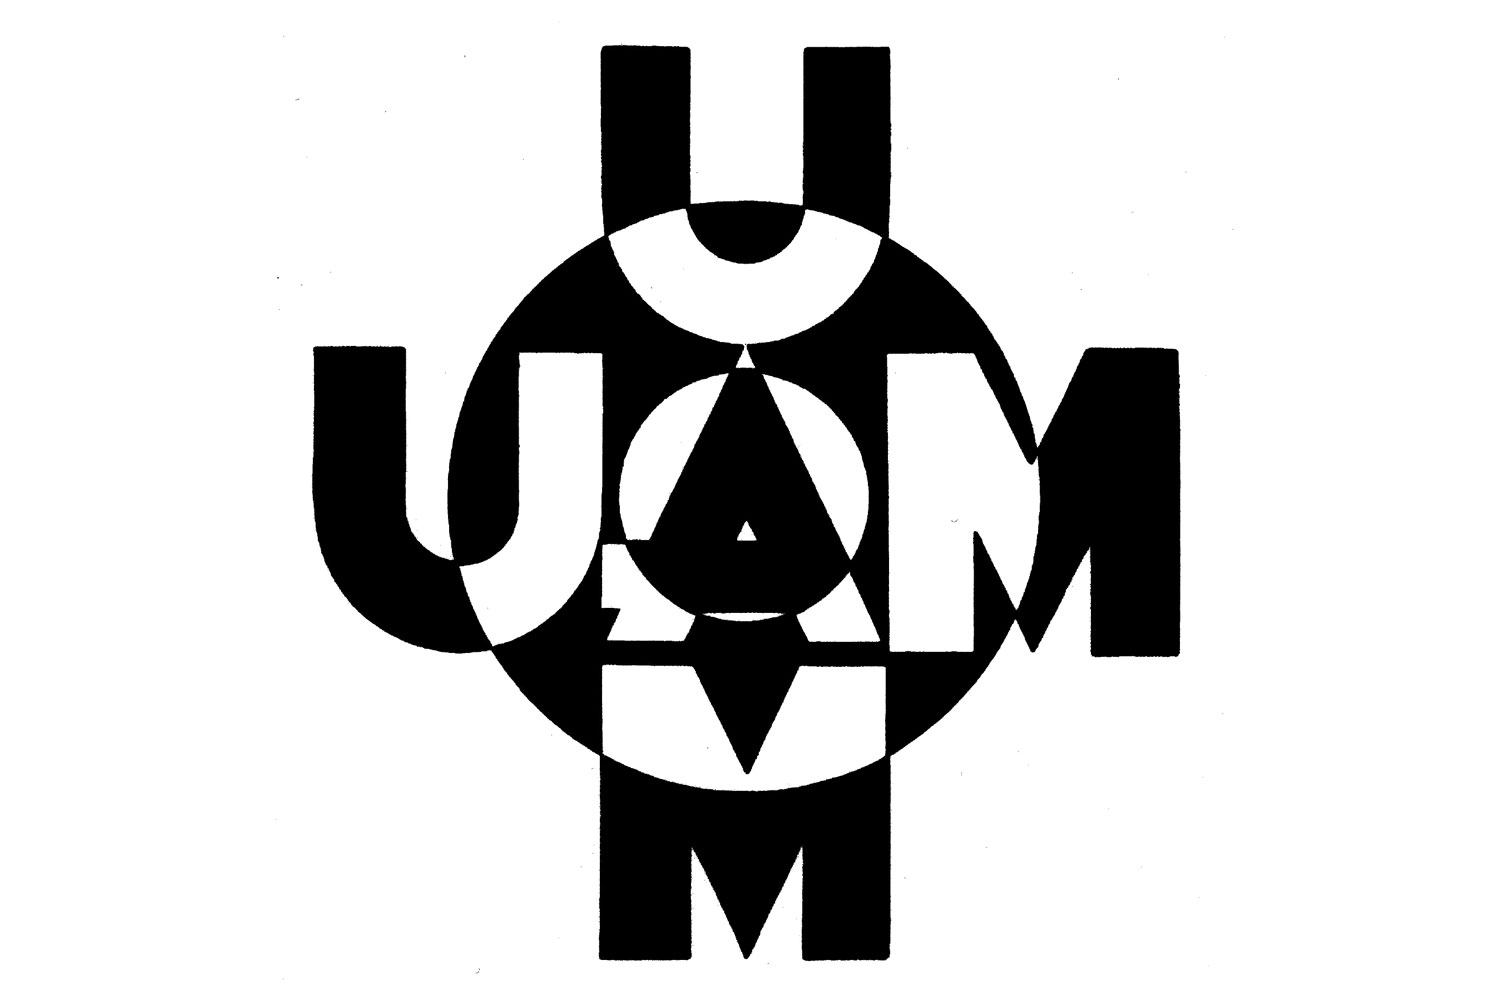 UAM - Union des Artistes Modernes